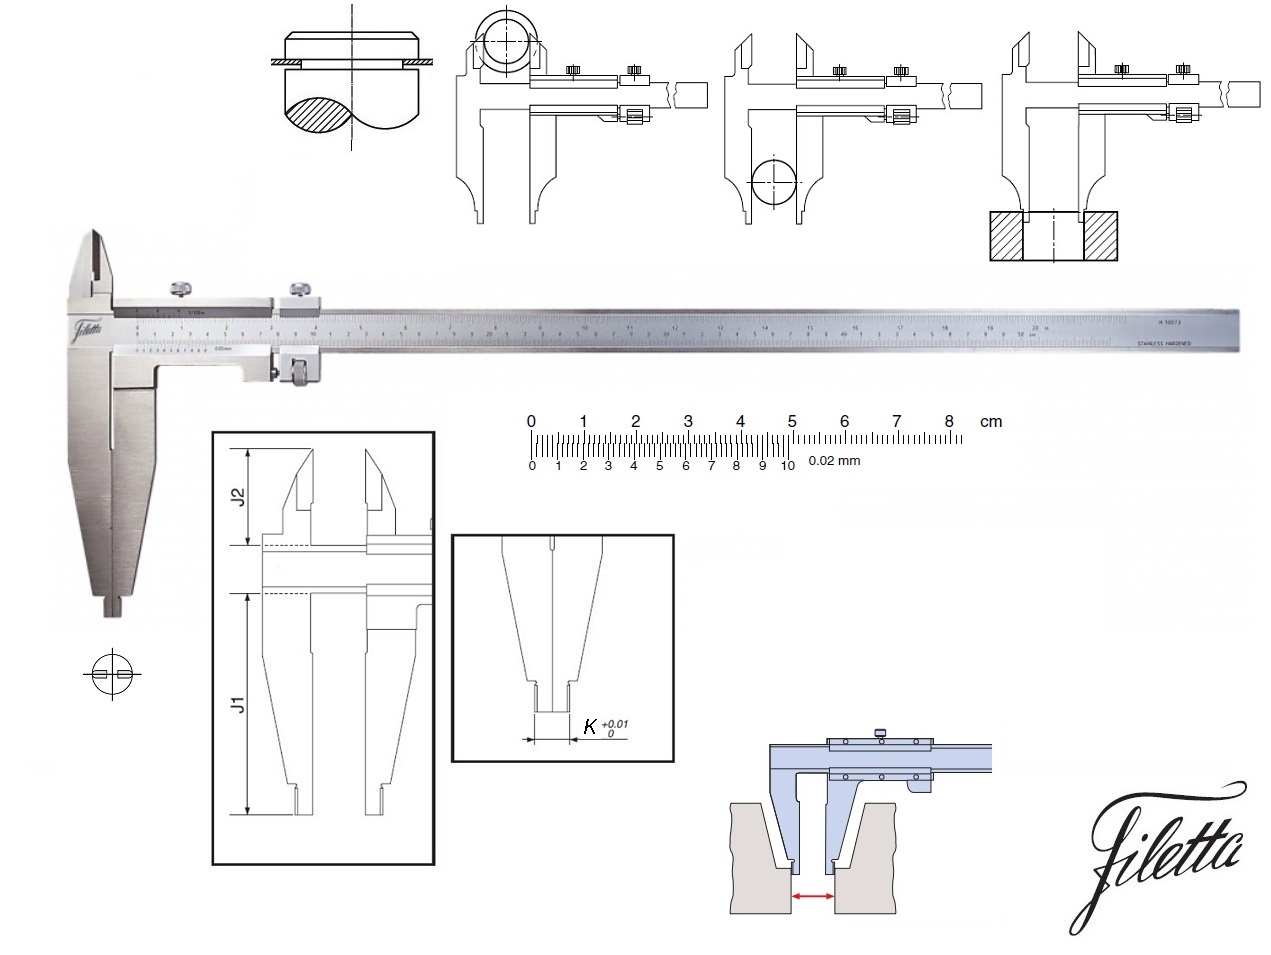 Posuvné měřítko Filetta 0-500/0,02 mm, čelisti 150 mm, s měřicími nožíky pro vnější měření